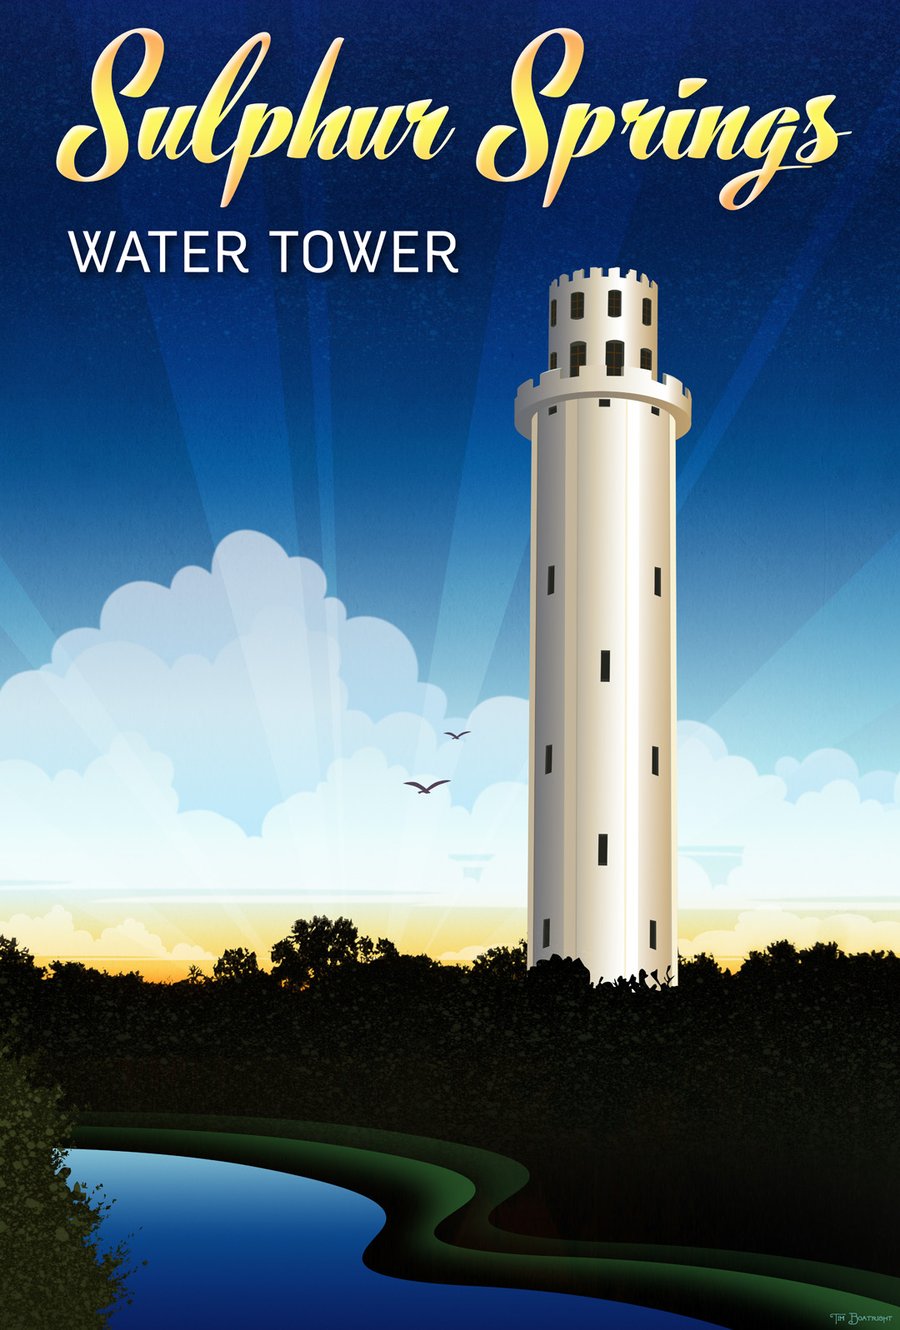 Image of Sulphur Springs Water Tower